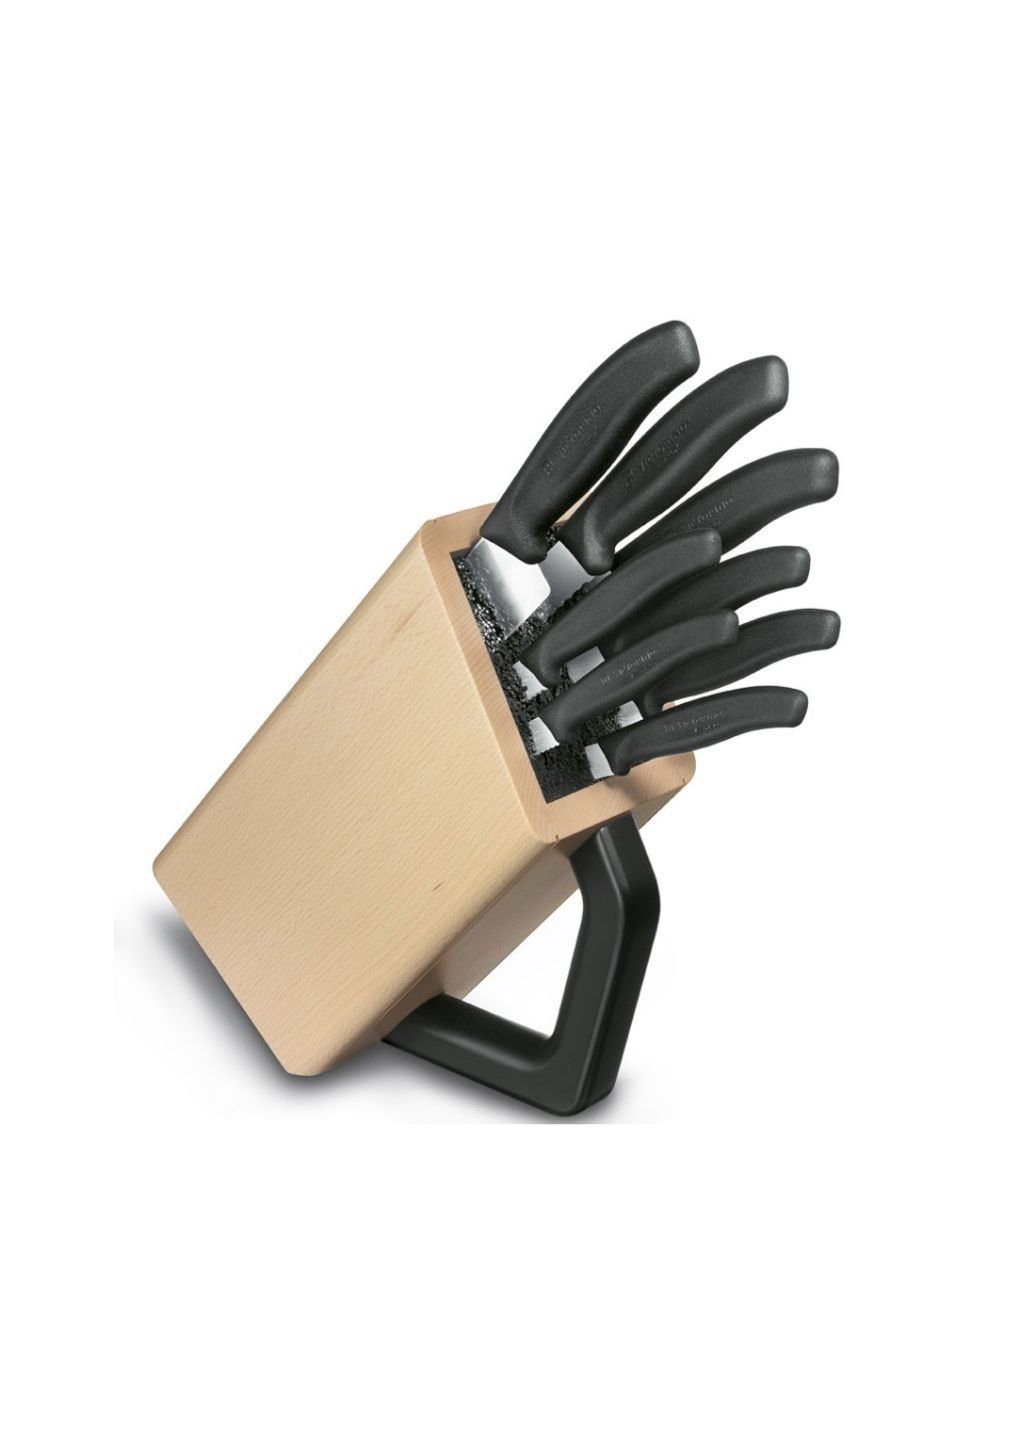 Набор ножей SwissClassic Cutlery Block 8 шт (6.7173.8) Victorinox чёрные,